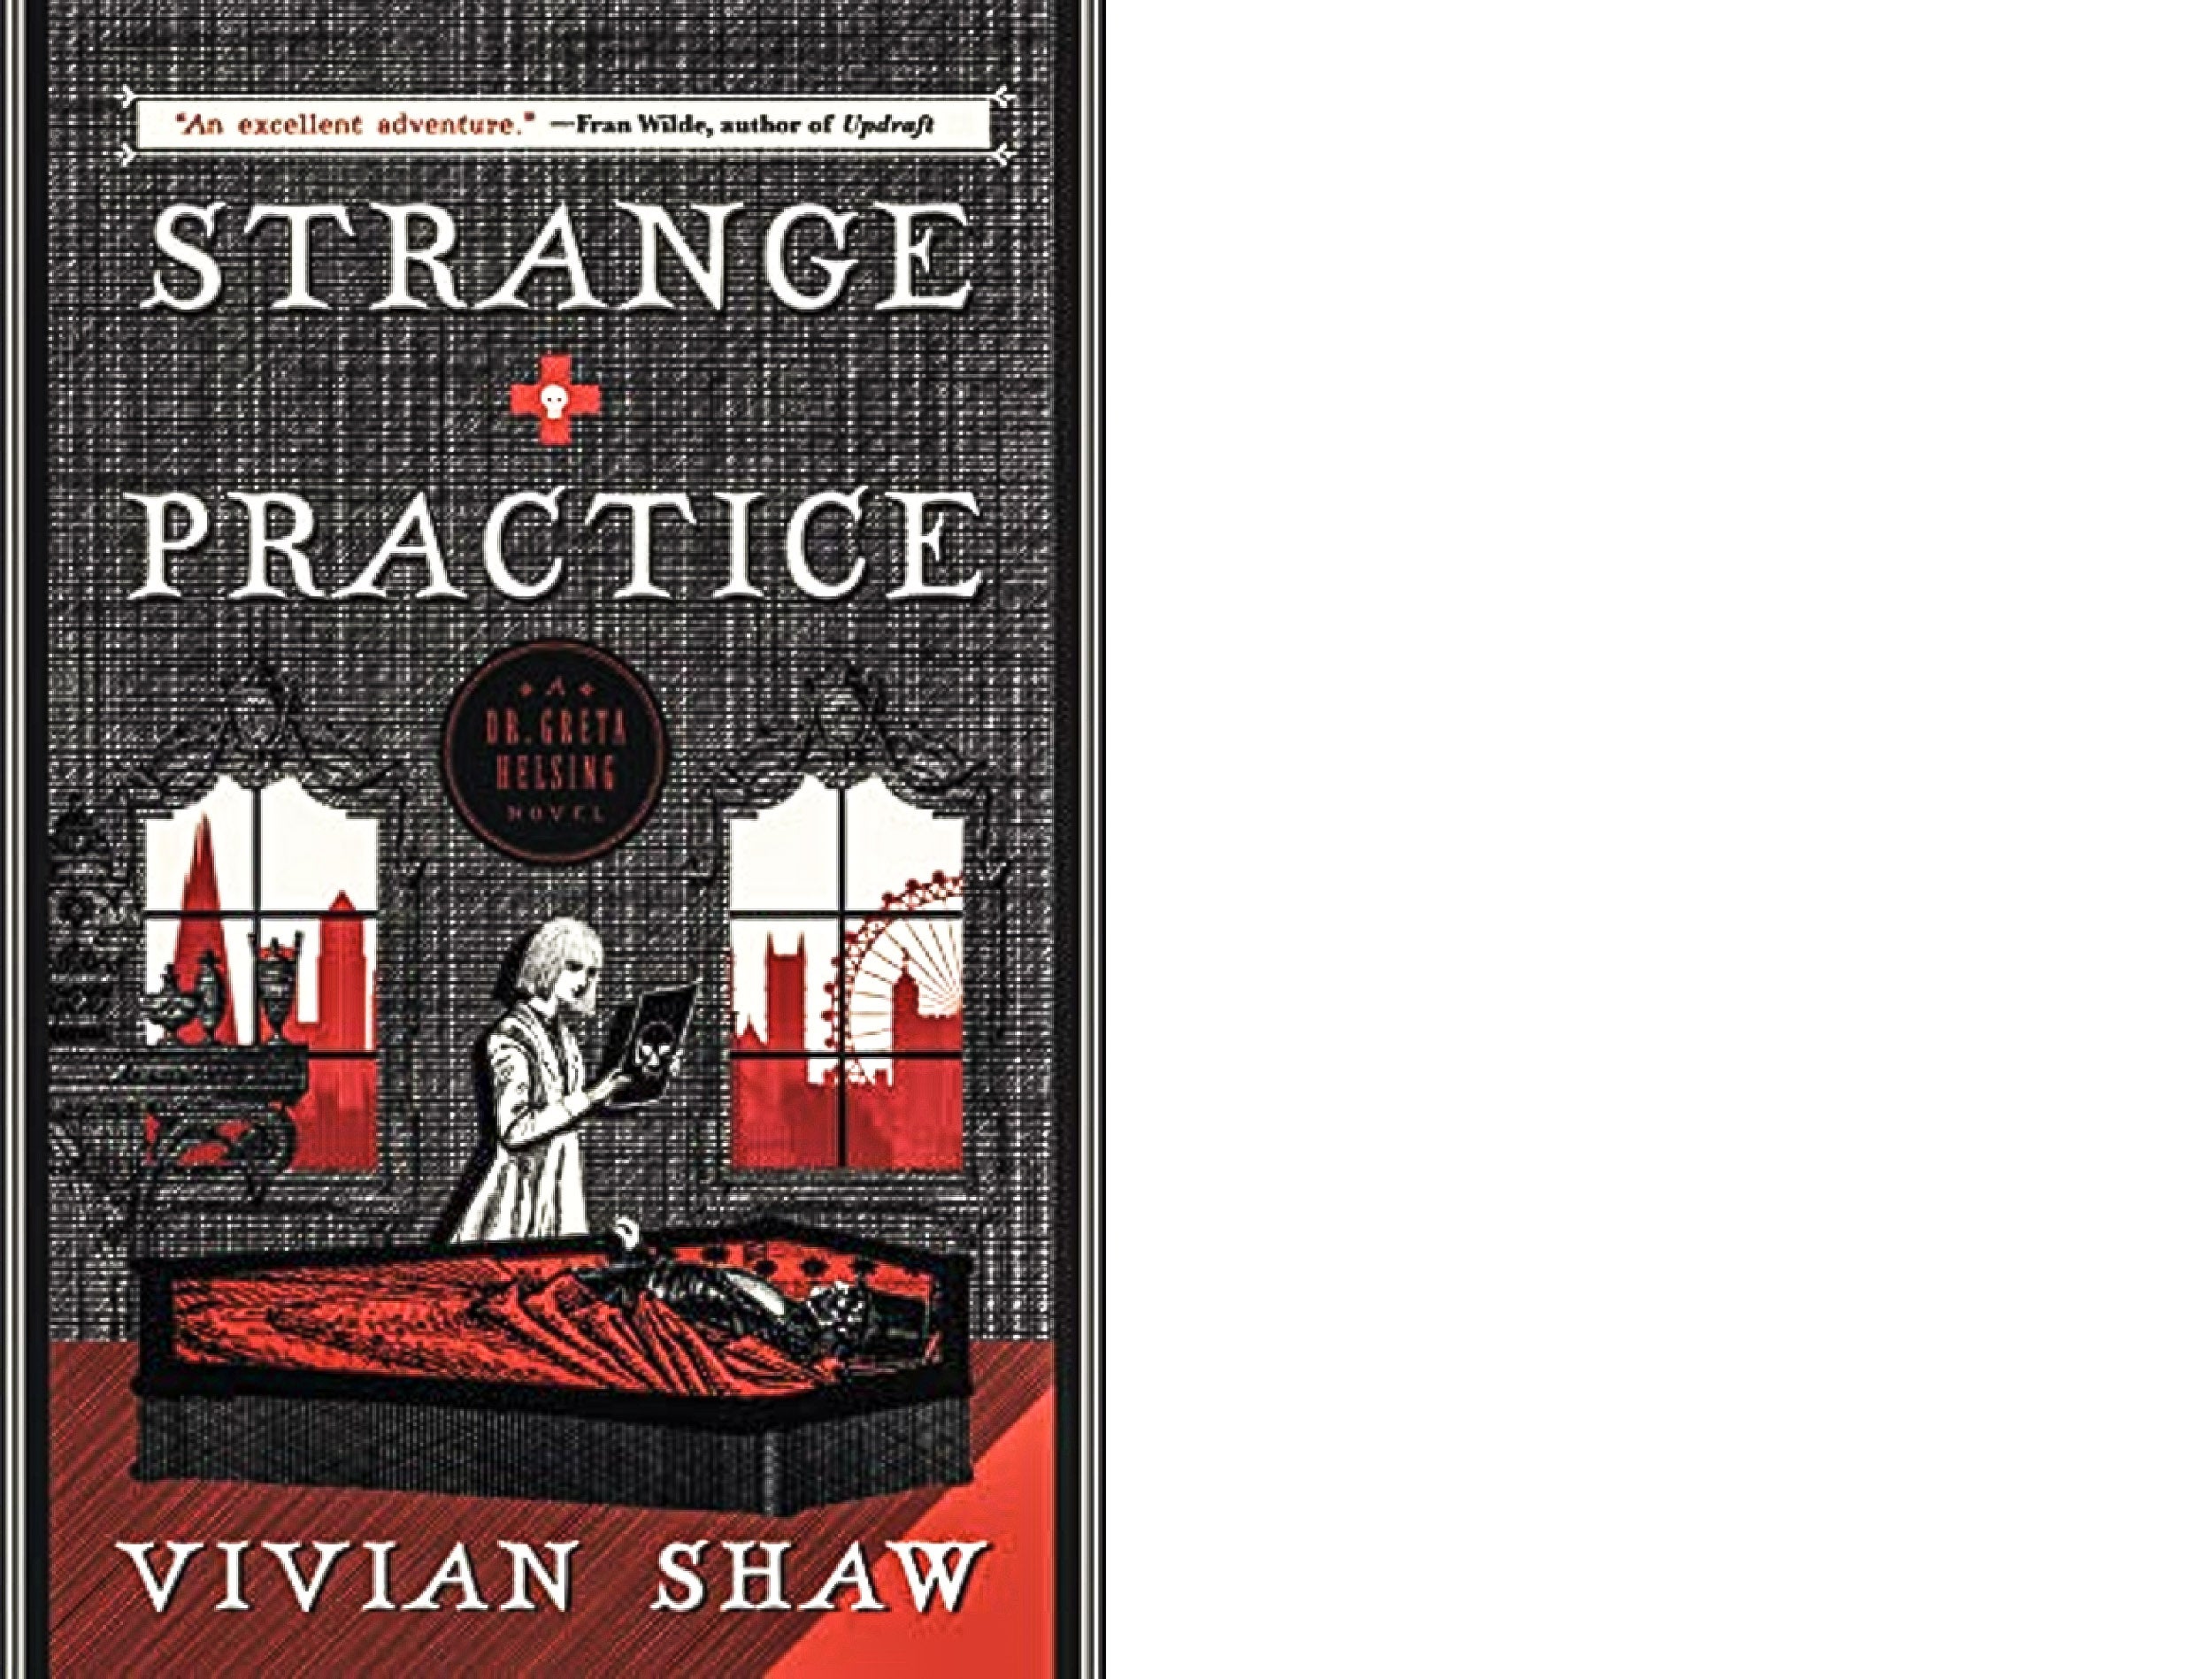 Book cover: "Strange Practice."